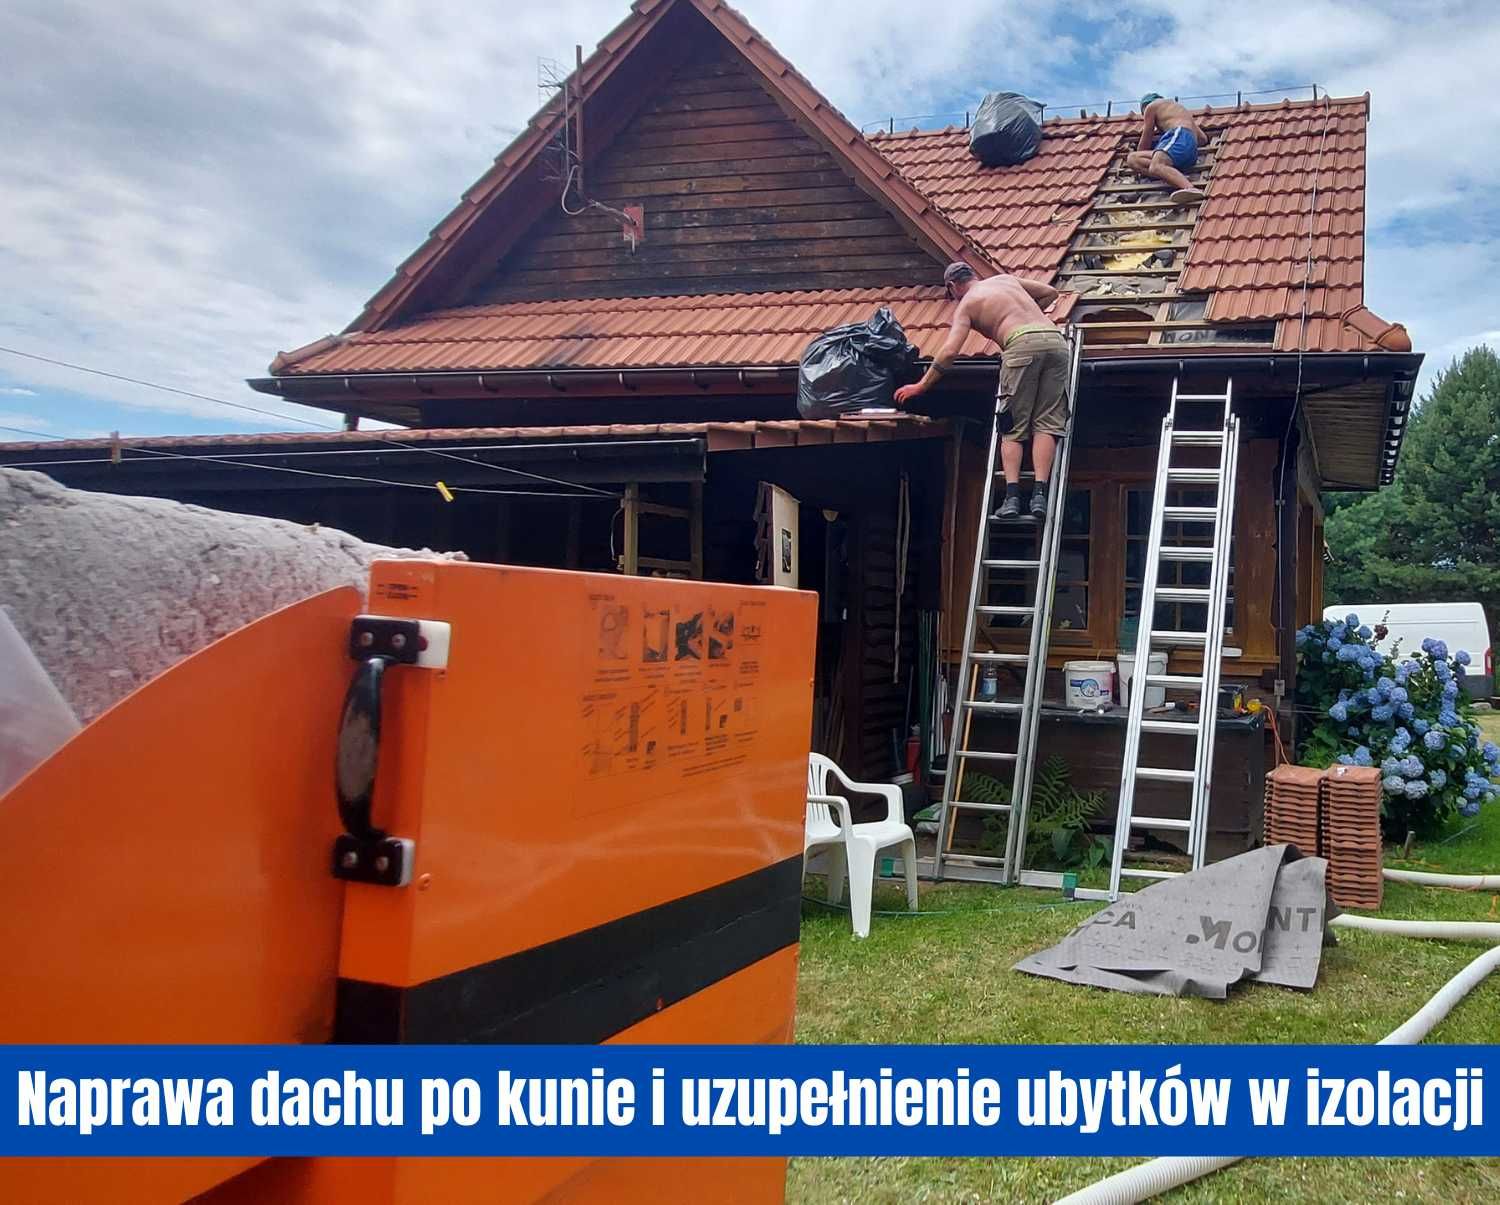 Zwalczanie kuny pastuch na domu i naprawa szkód w dachu Toruń